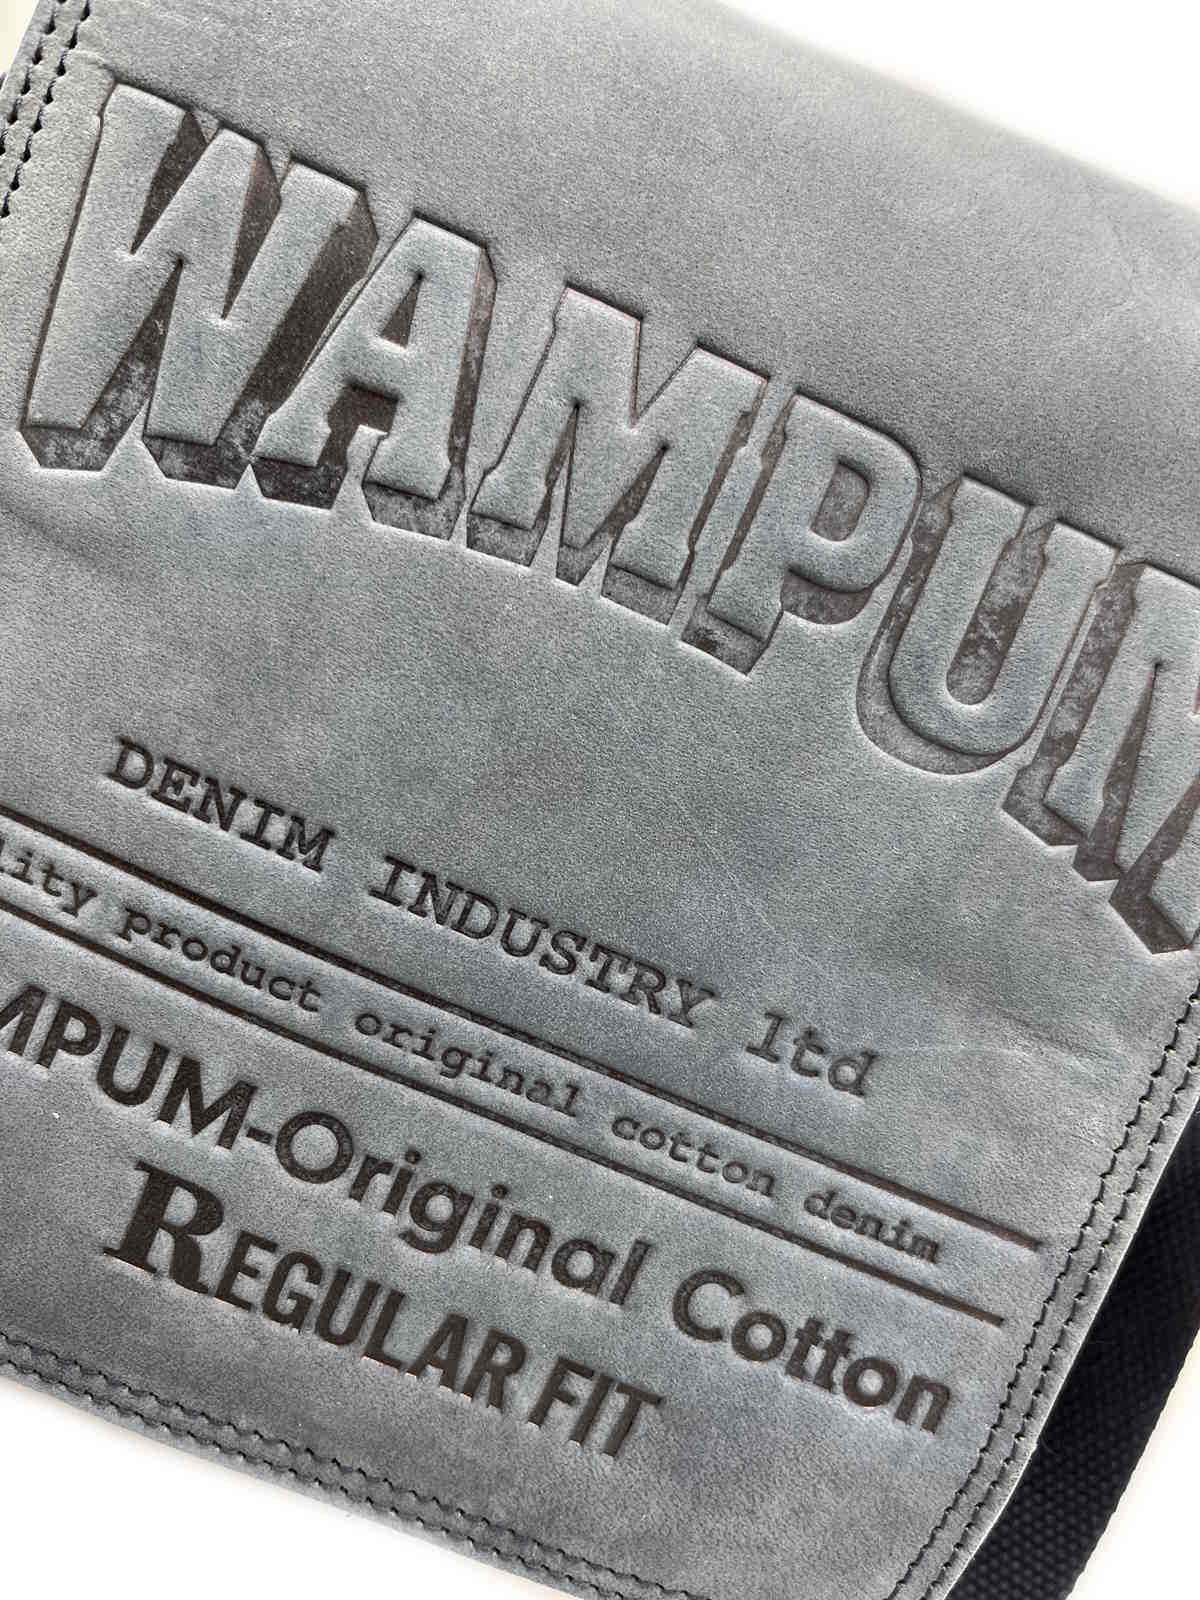 Brand WAMPUM, Genuine Leather Messenger Bag, art. BAG218.425